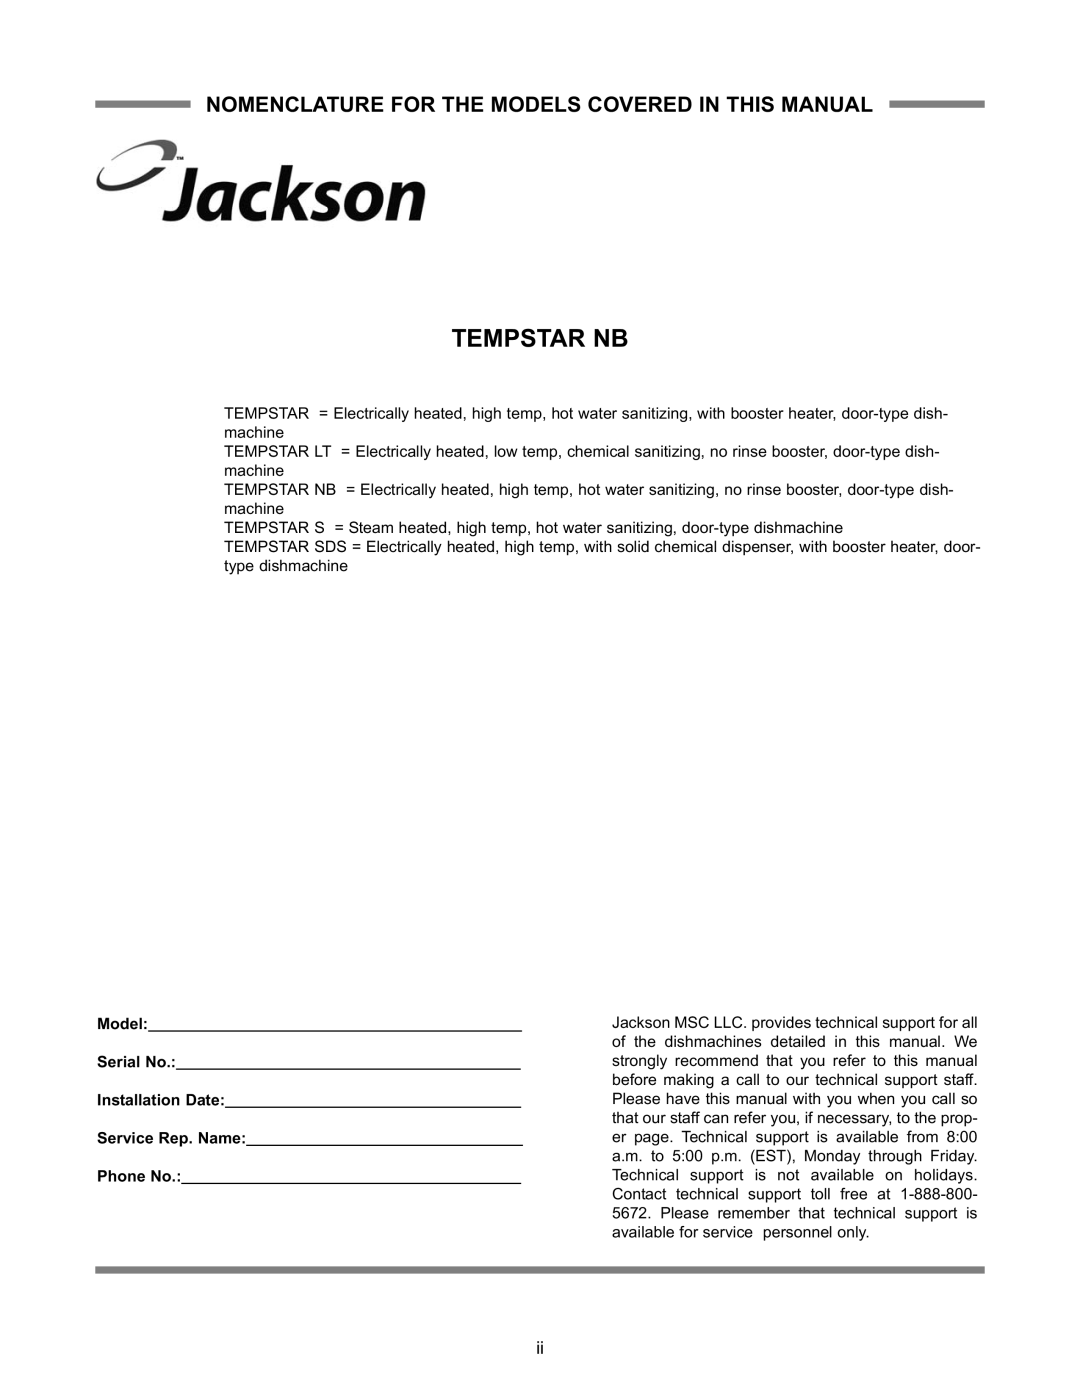 Jackson Tempstar Series technical manual Tempstar NB 